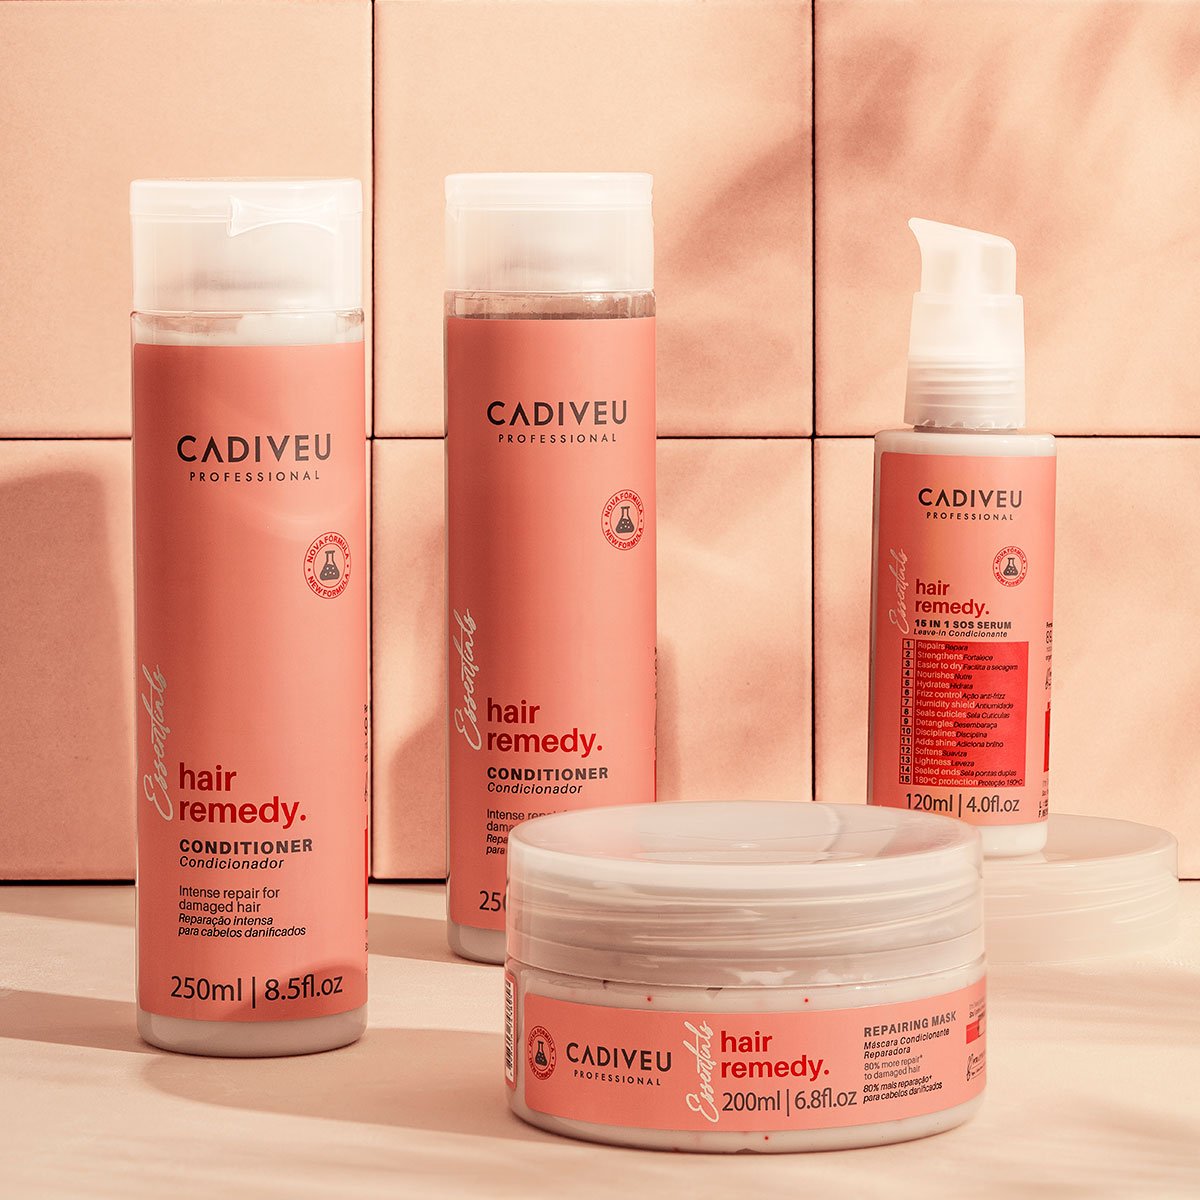 Kit Cadiveu Essentials Hair Remedy Shampoo Condicionador Mascara e Acai Oil 110 (4 produtos) ÚNICO 2